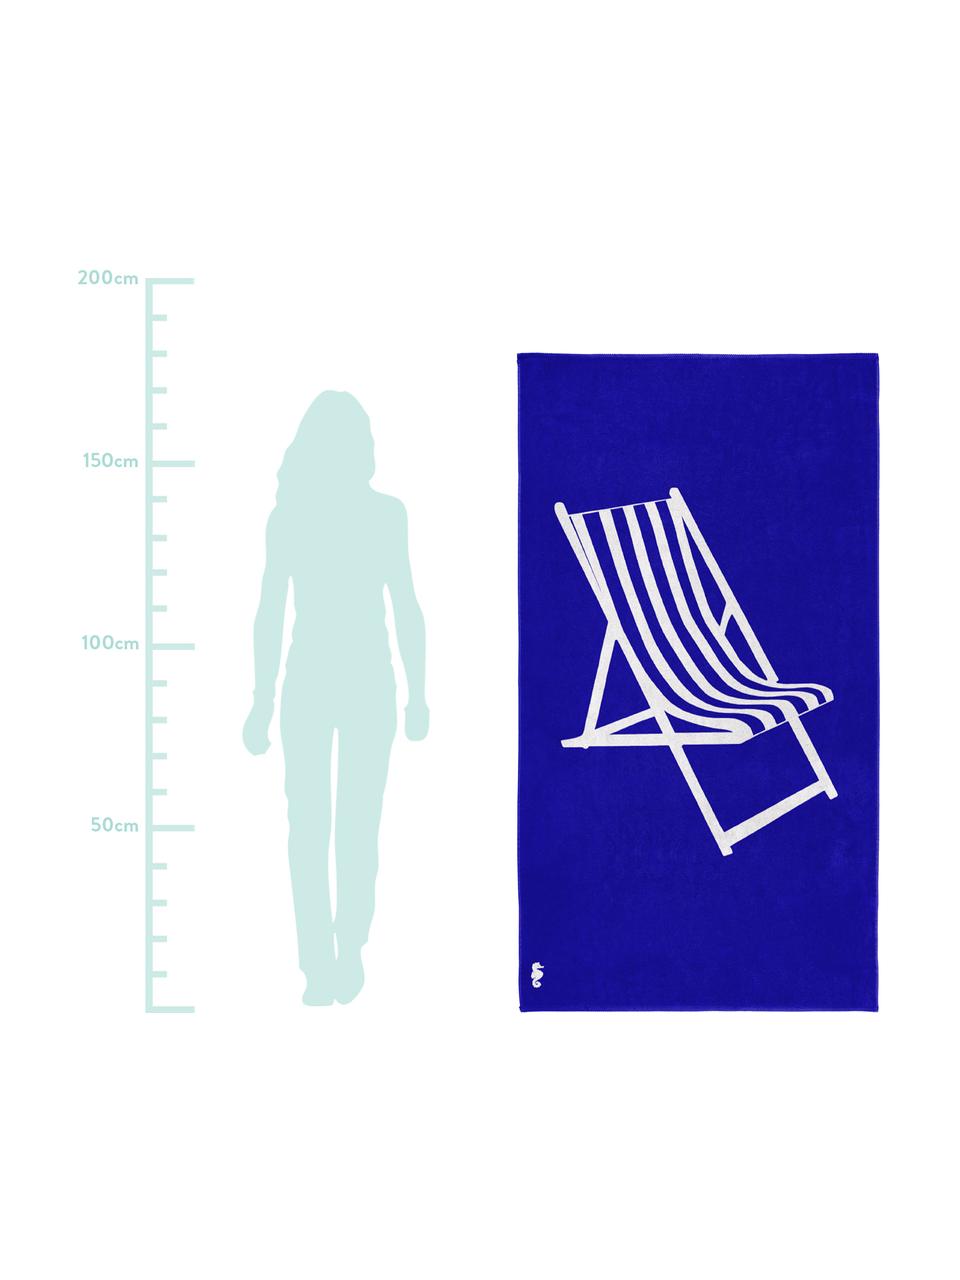 Strandtuch Take a Seat mit sommerlichem Motiv, 100% ägyptische Baumwolle
mittelschwere Stoffqualität, 420 g/m², Blau, Weiss, 100 x 180 cm